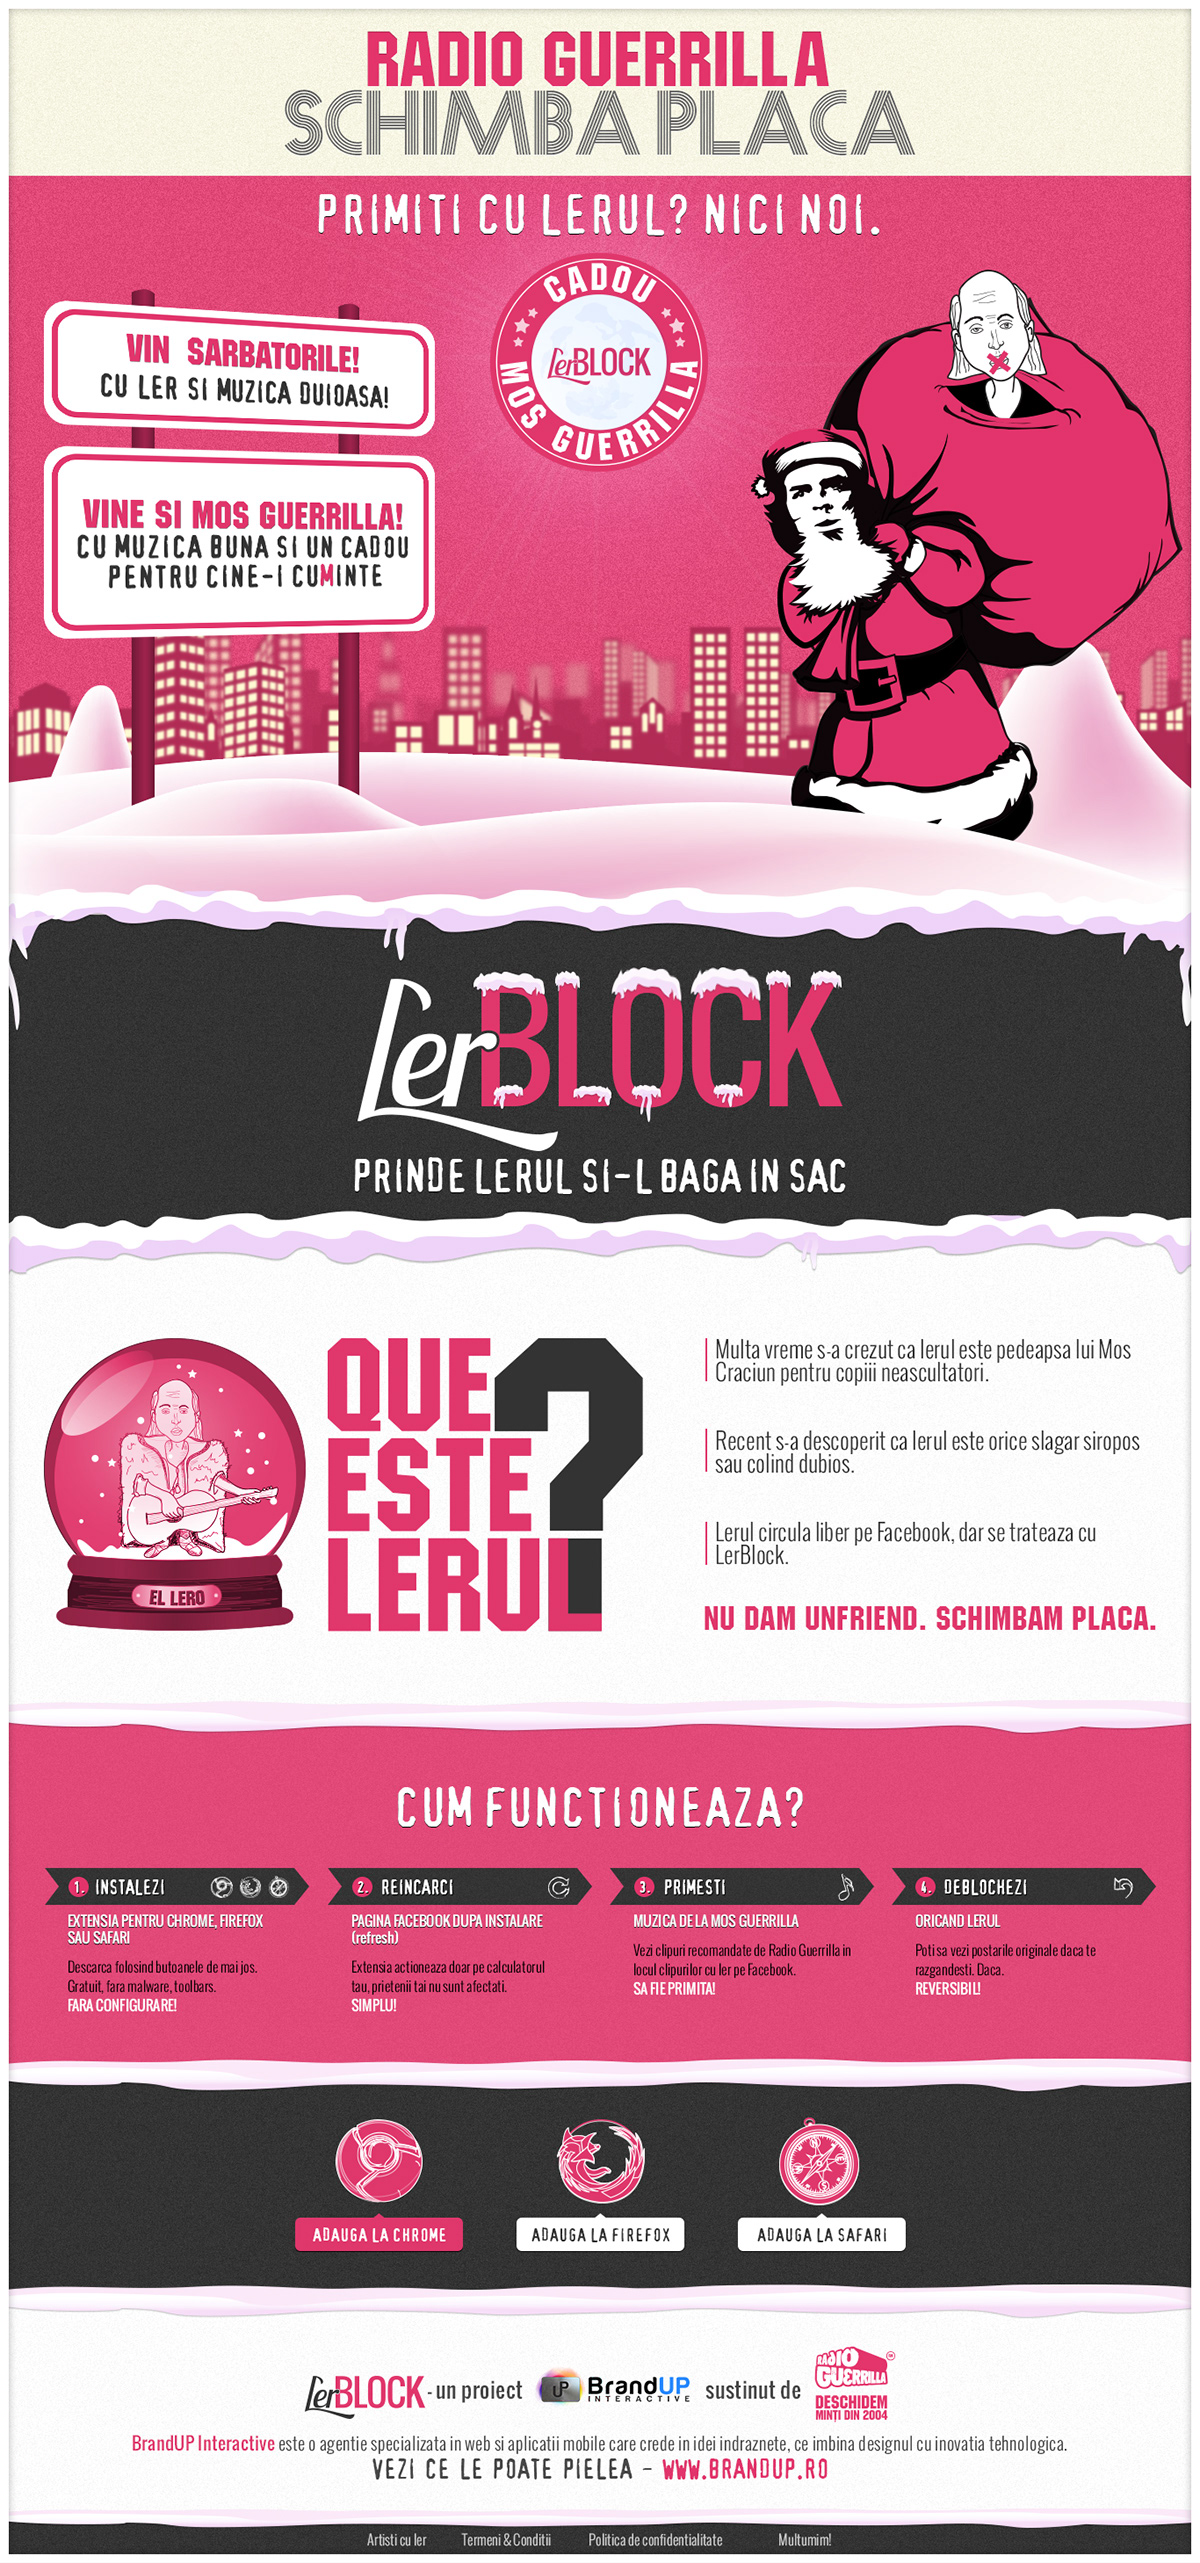 Ler Block LerBlock radio guerrilla plugin Mos Guerrilla Edmond Enache Ler Blocker Florian Langa award Internetics social media facebook app winner